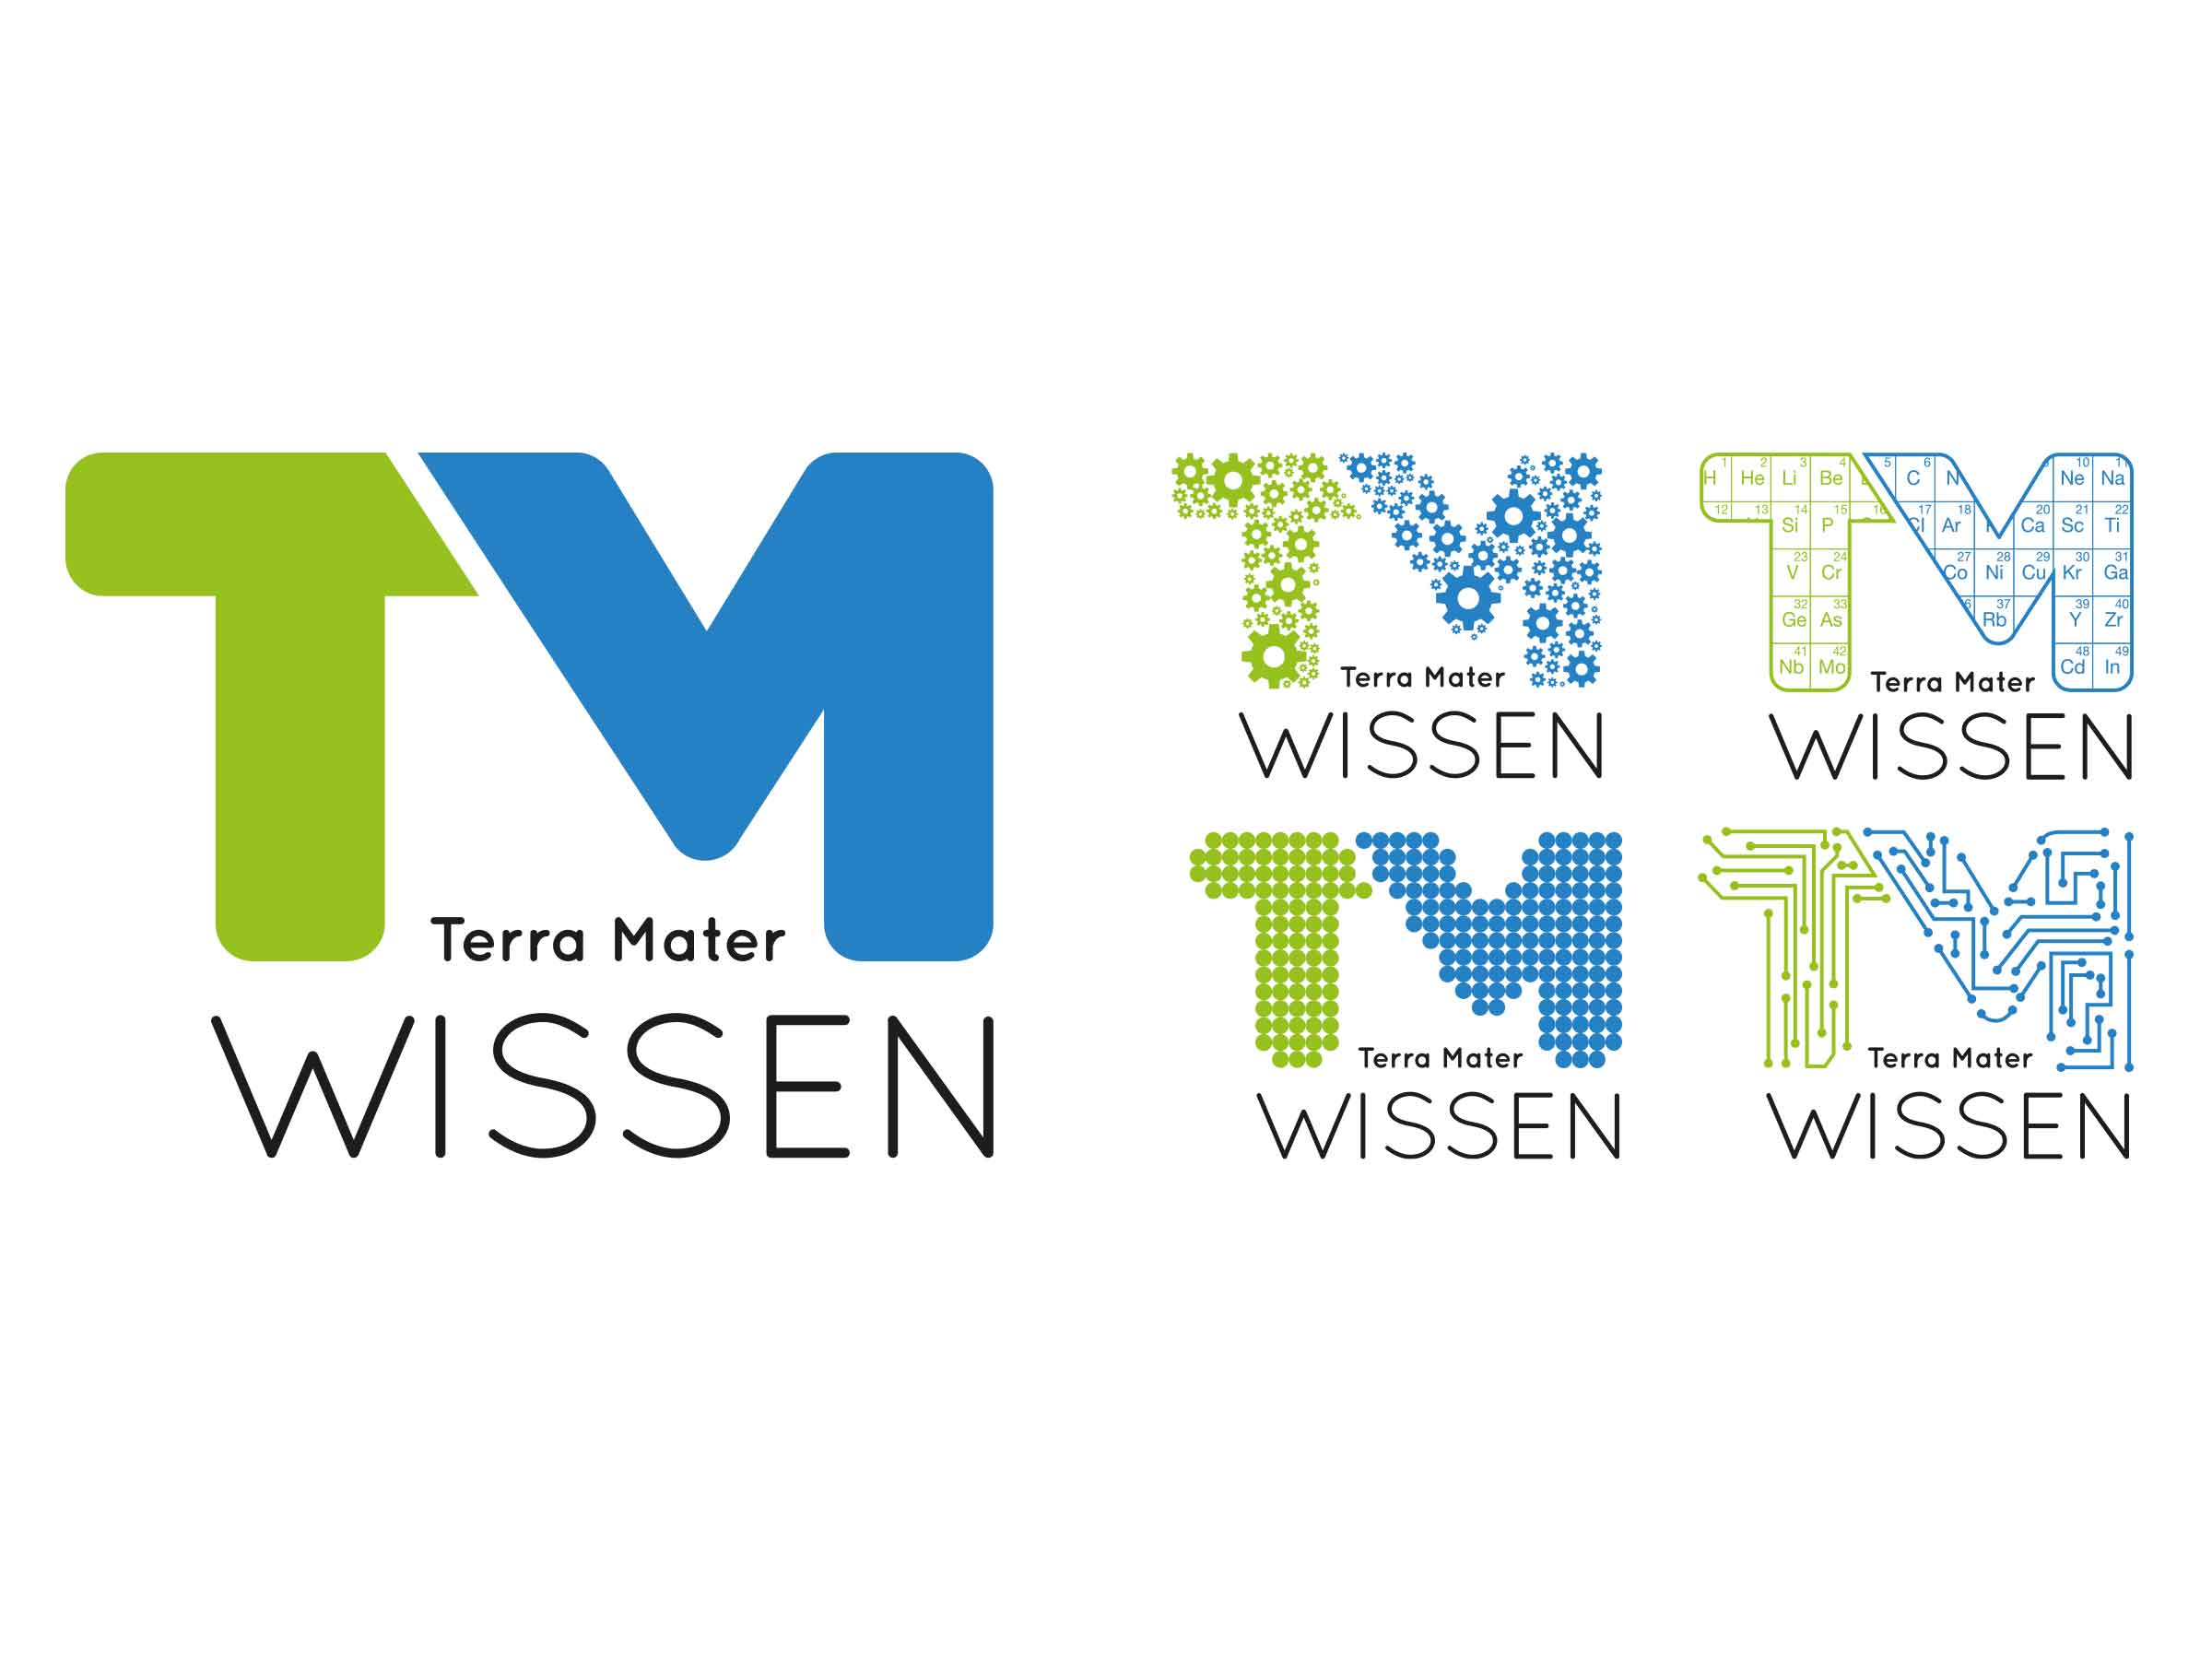 TM-wissen-cosmos-film-factory-servus-tv